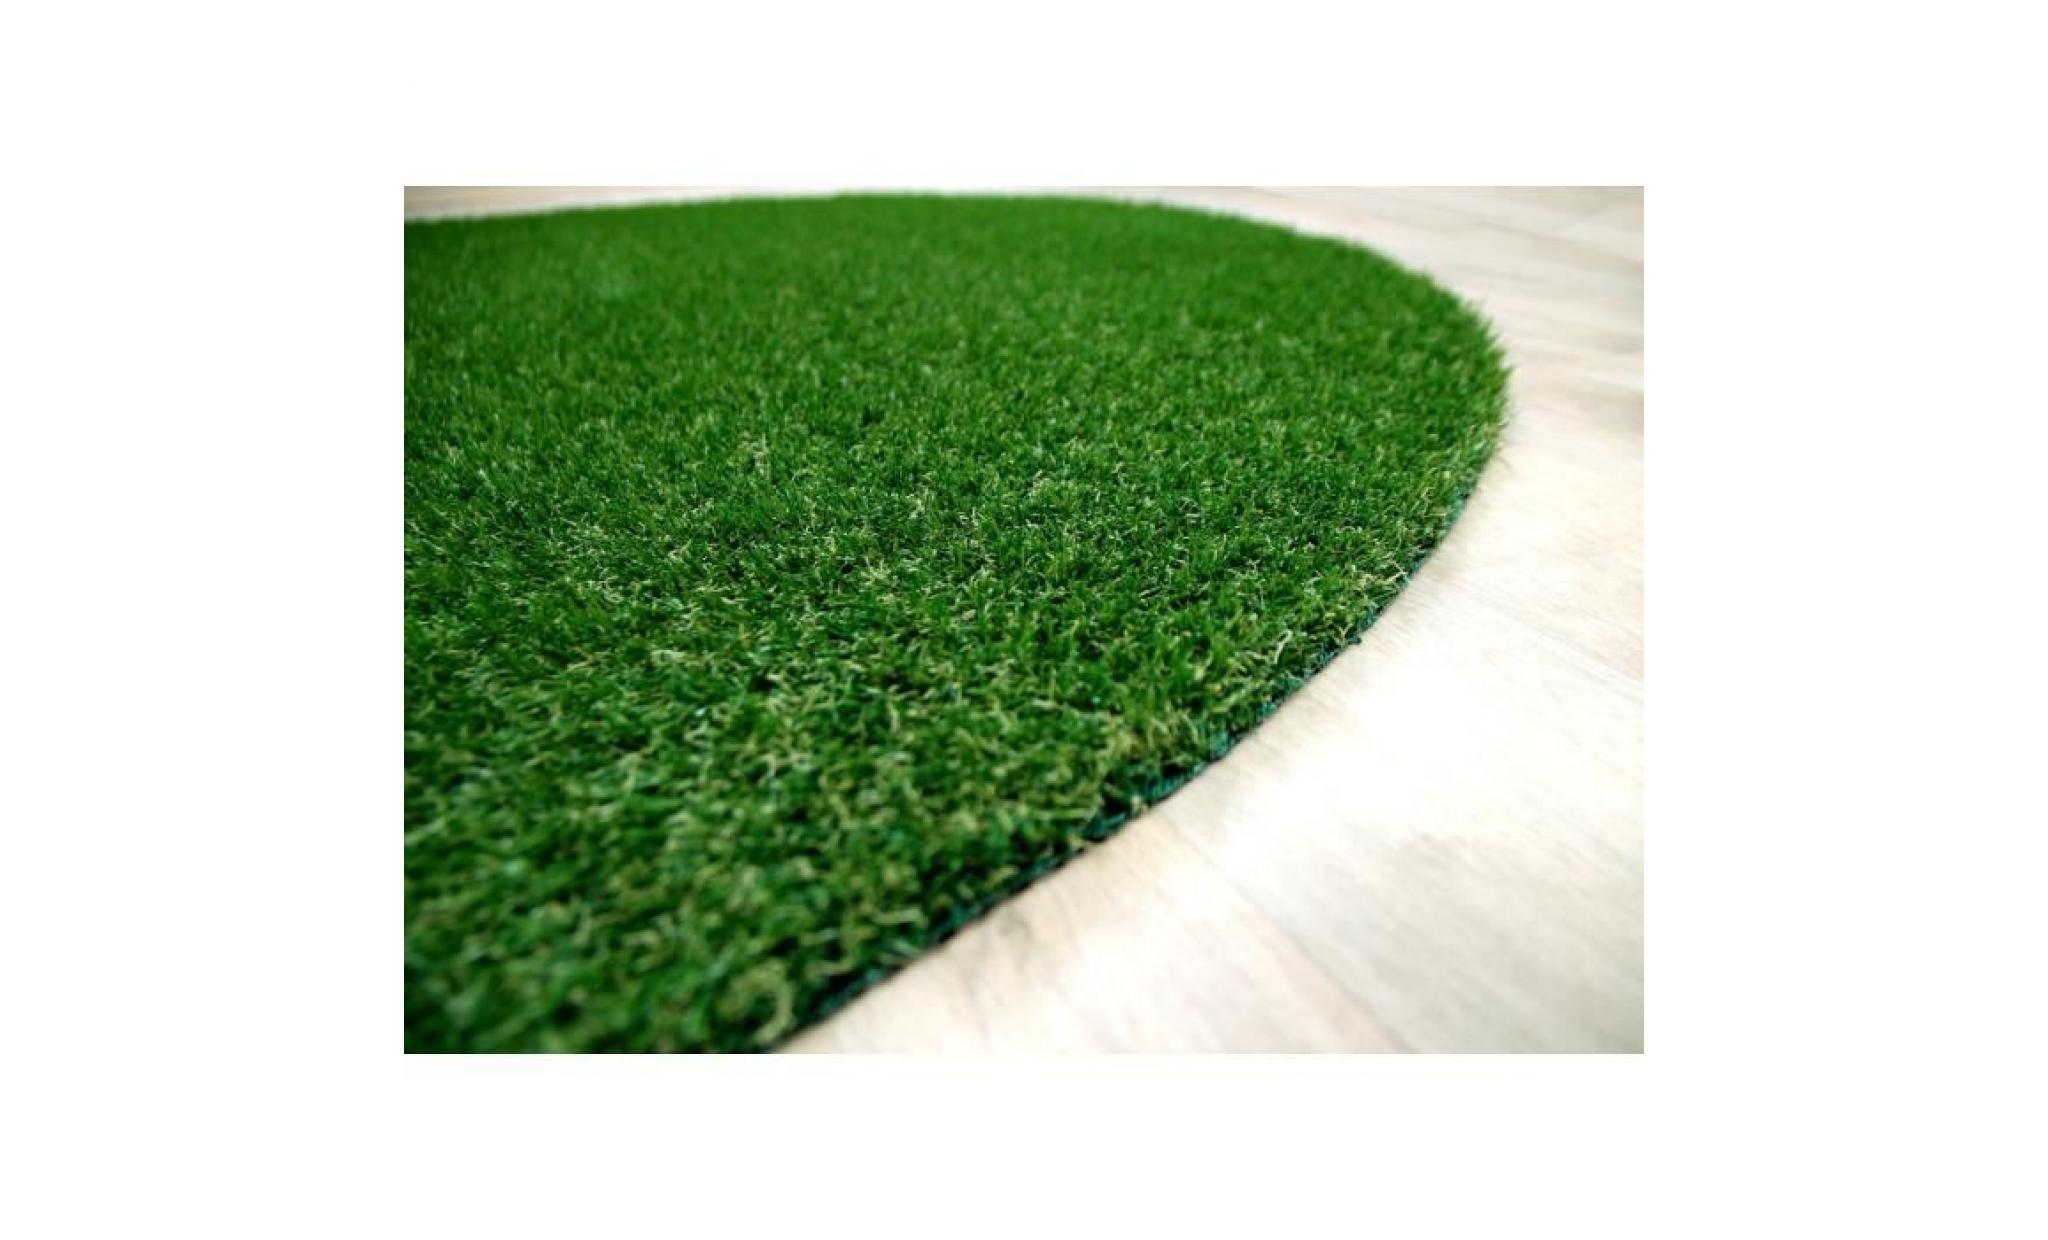 wembley   tapis type luxe gazon artificiel rond – pour jardin, terrasse, balcon   vert  [133 cm rond] pas cher